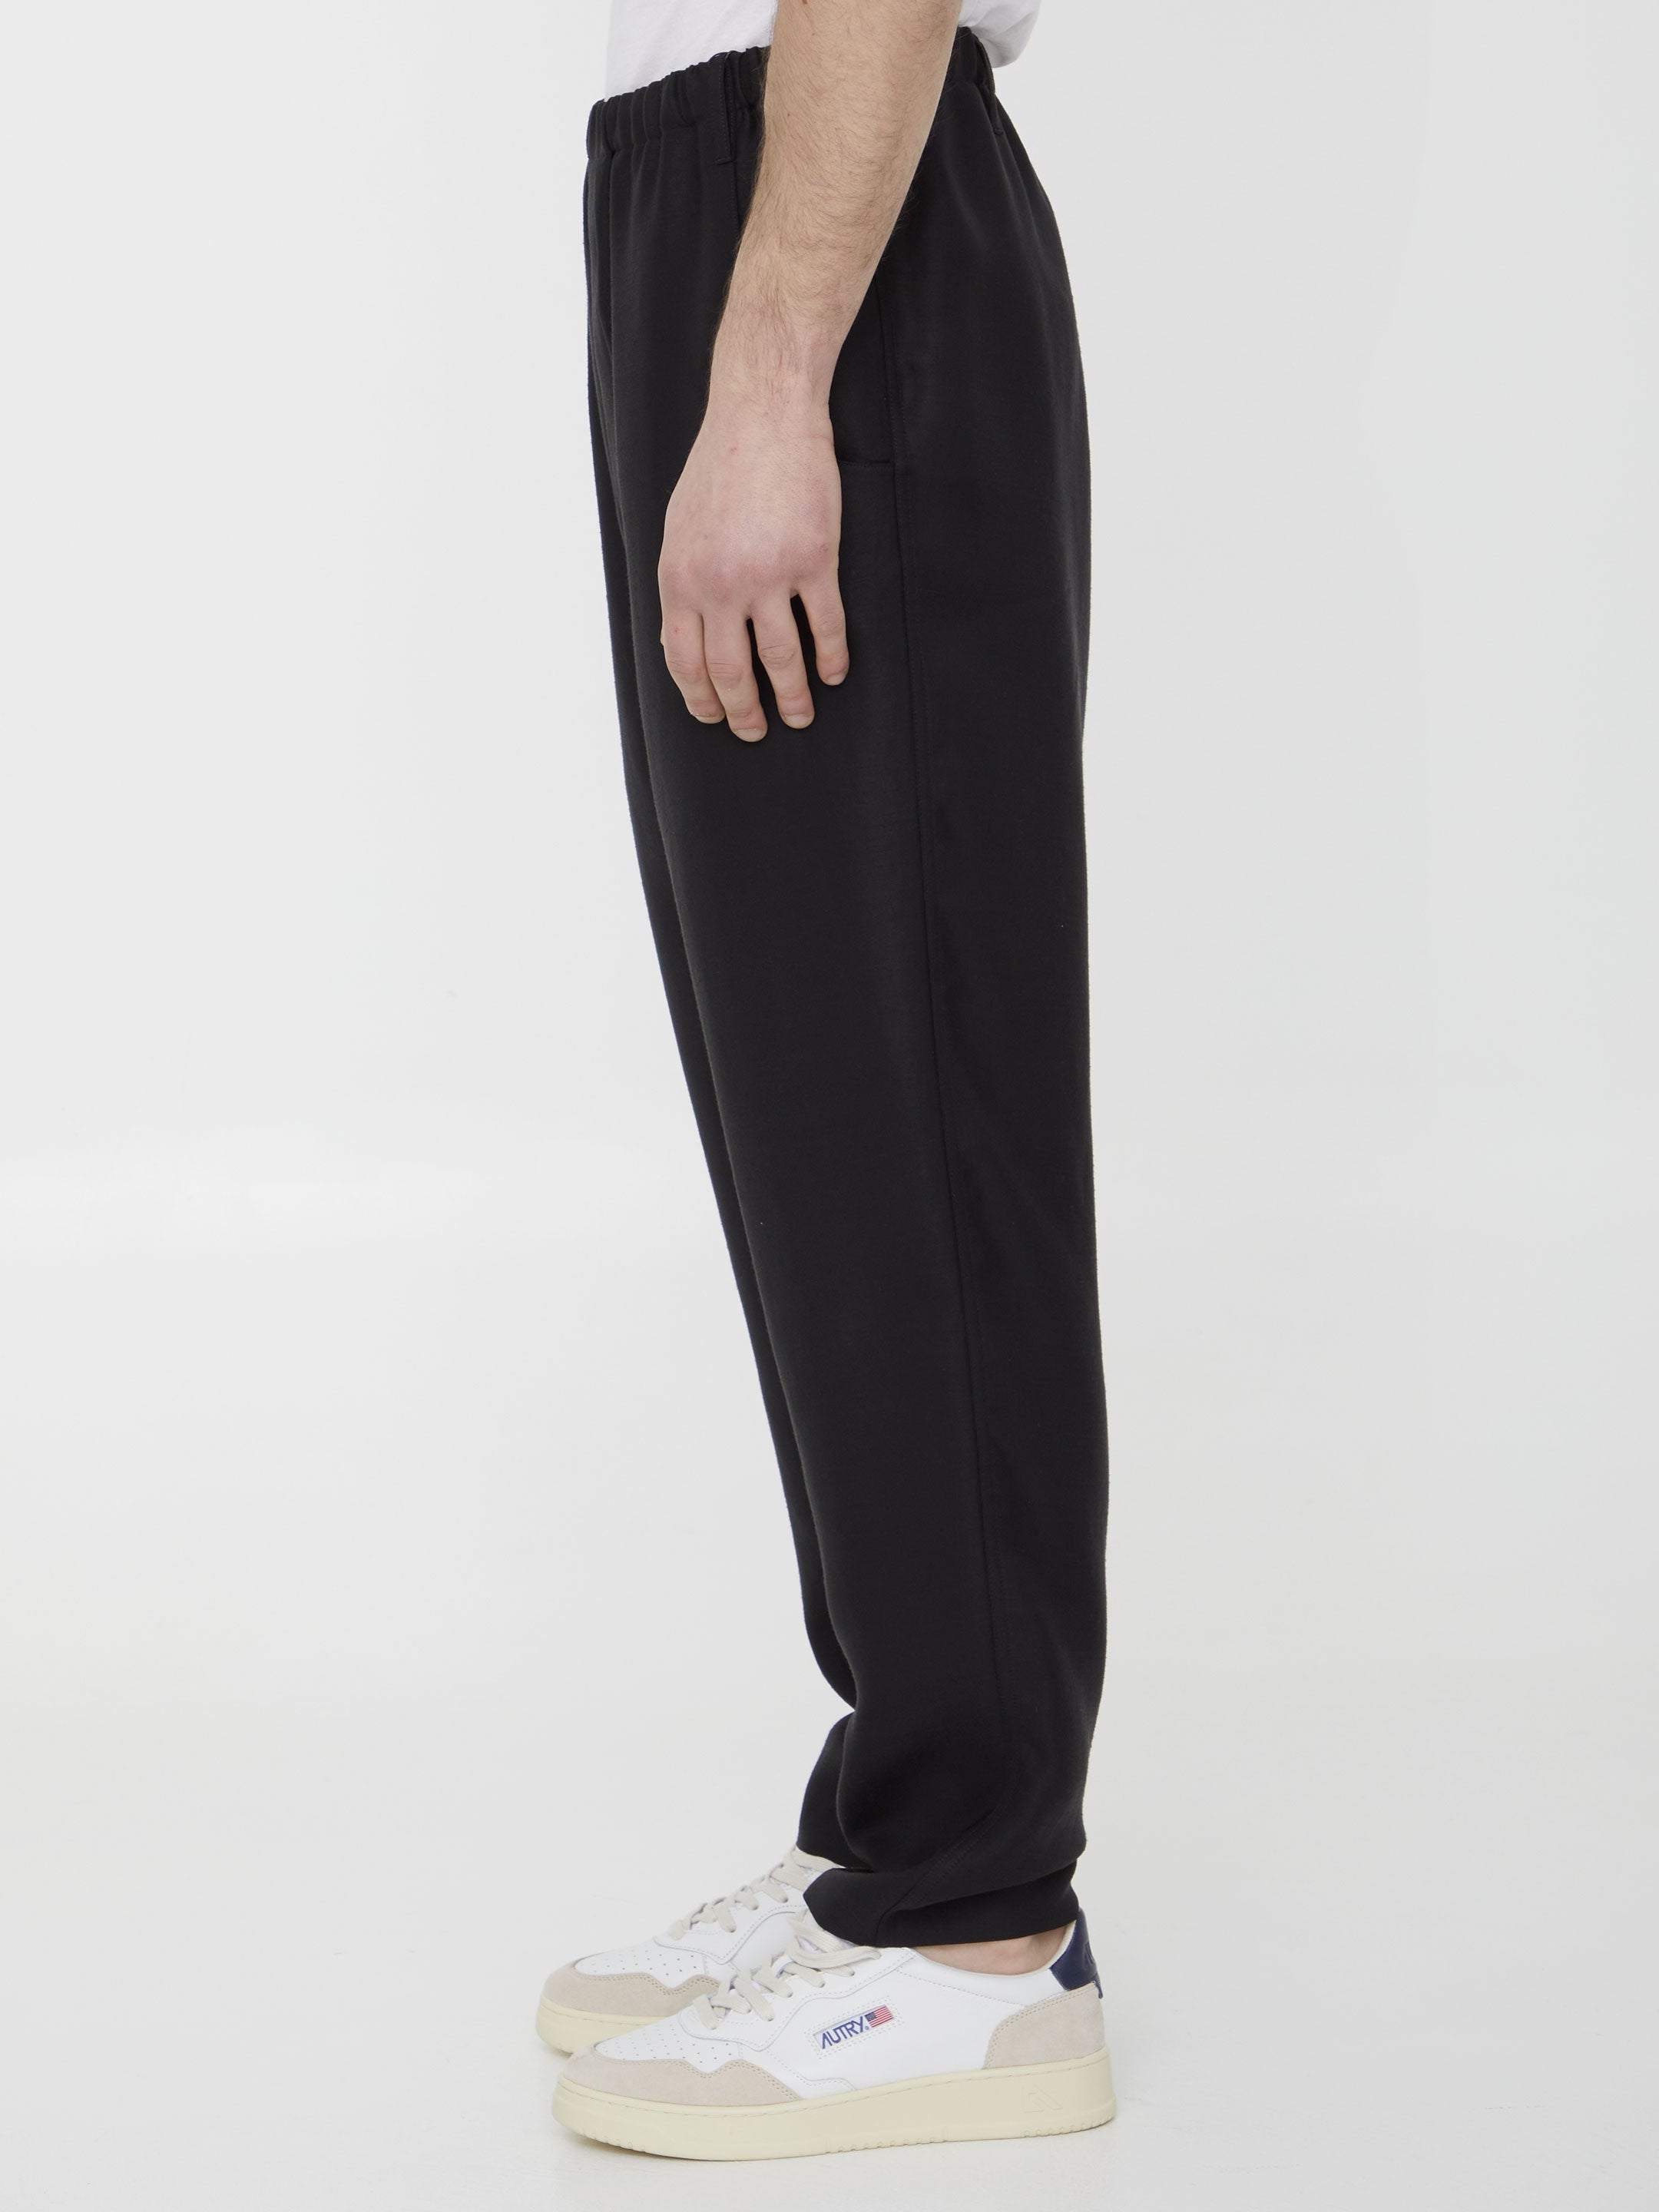 SAINT-LAURENT-OUTLET-SALE-Viscose-trousers-Hosen-48-BLACK-ARCHIVE-COLLECTION-3.jpg